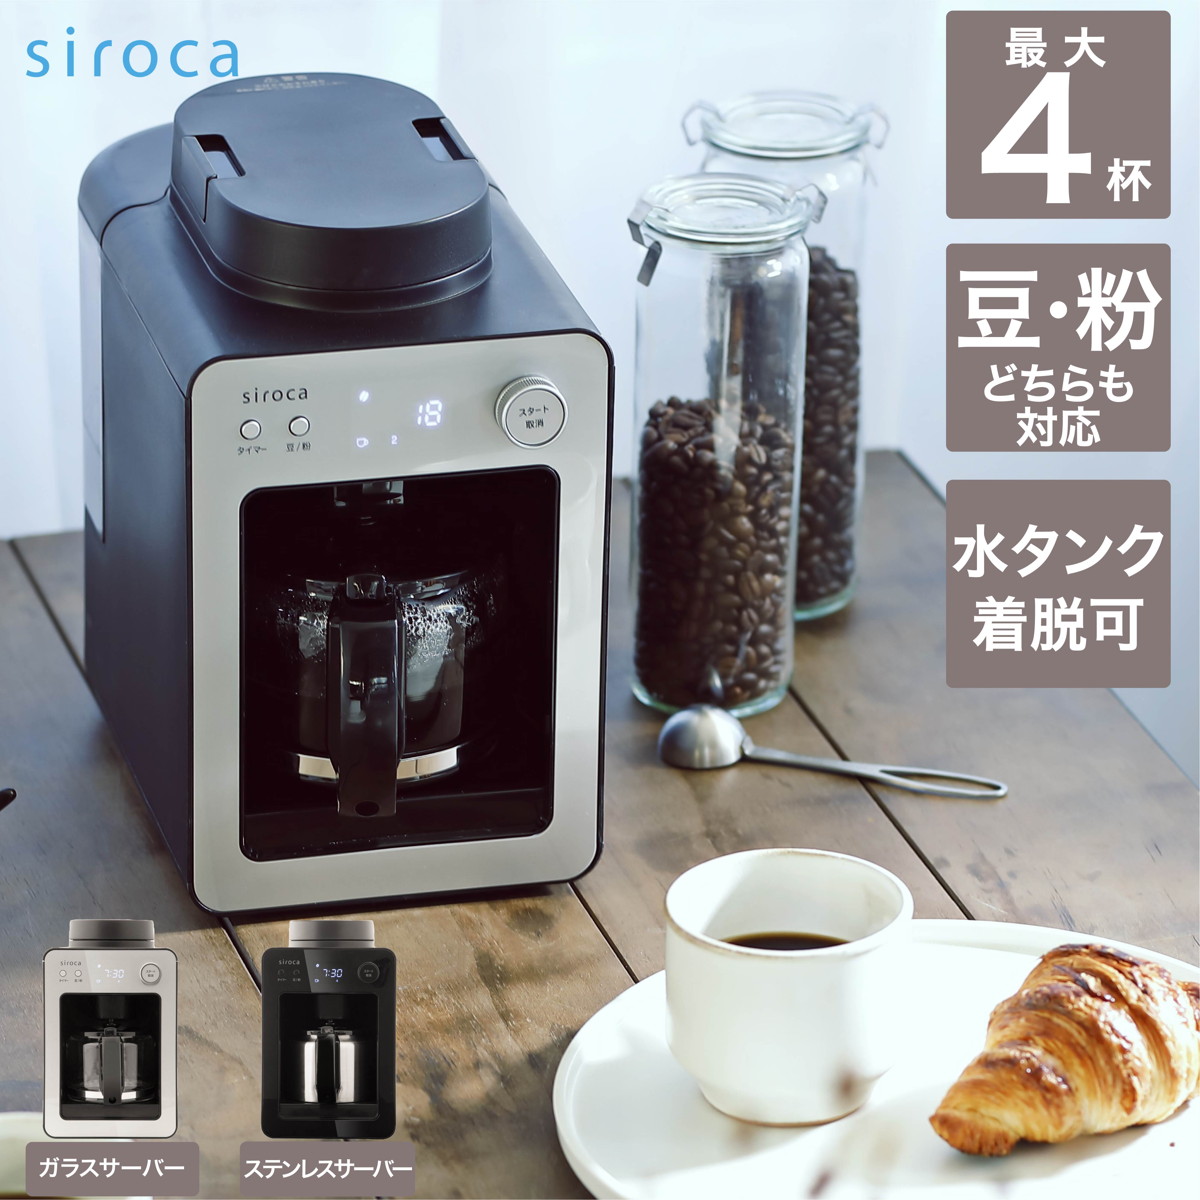 シロカ 内祝い siroca 保証 全自動コーヒーメーカー シルバー SC-A351 S